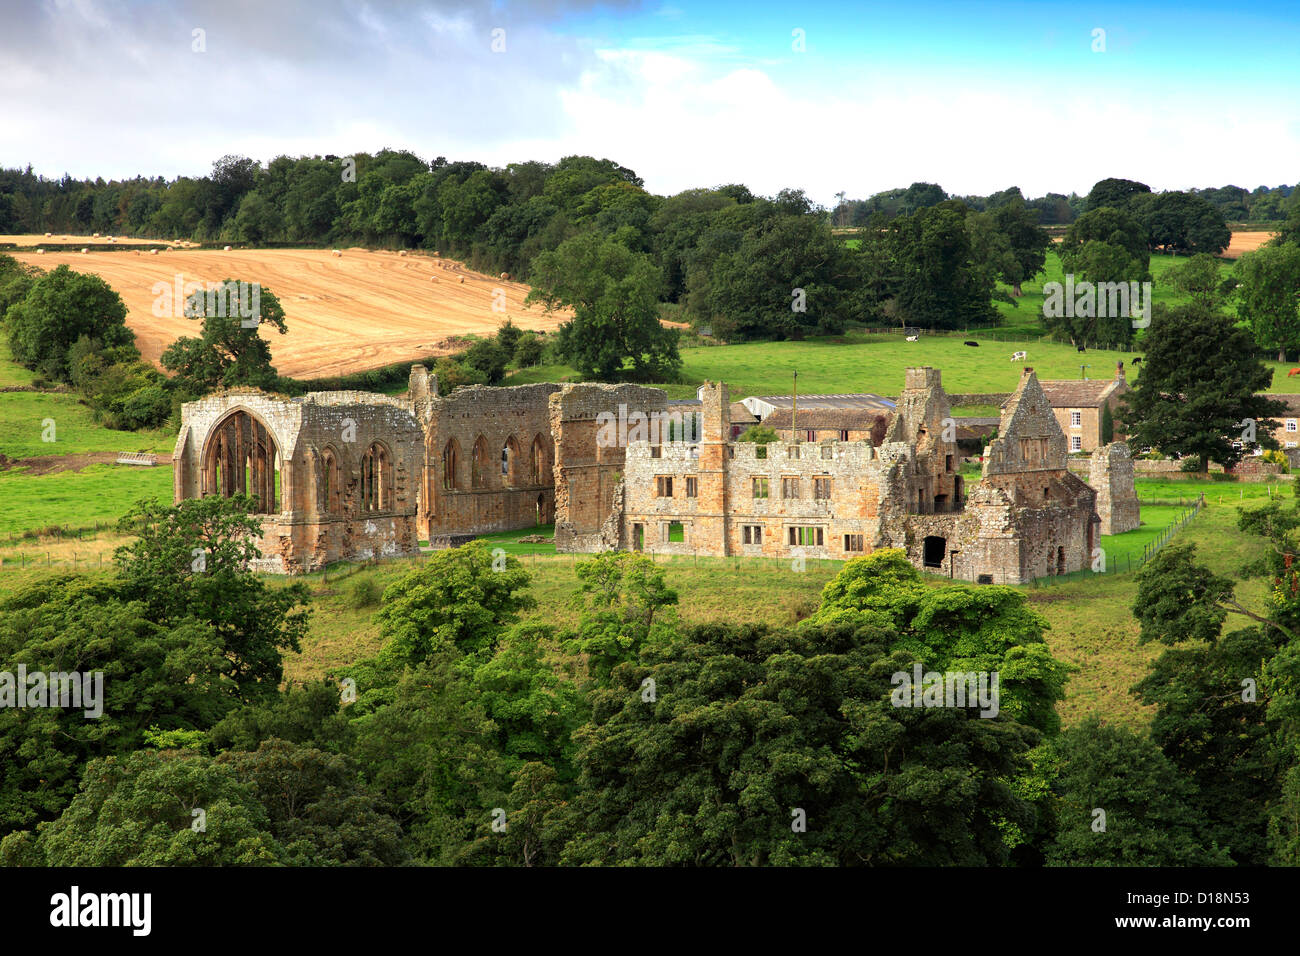 Les ruines de l'abbaye Egglestone, près de Barnard Castle Town, comté de Durham, de Teesdale, Angleterre, Grande-Bretagne, Royaume-Uni Banque D'Images